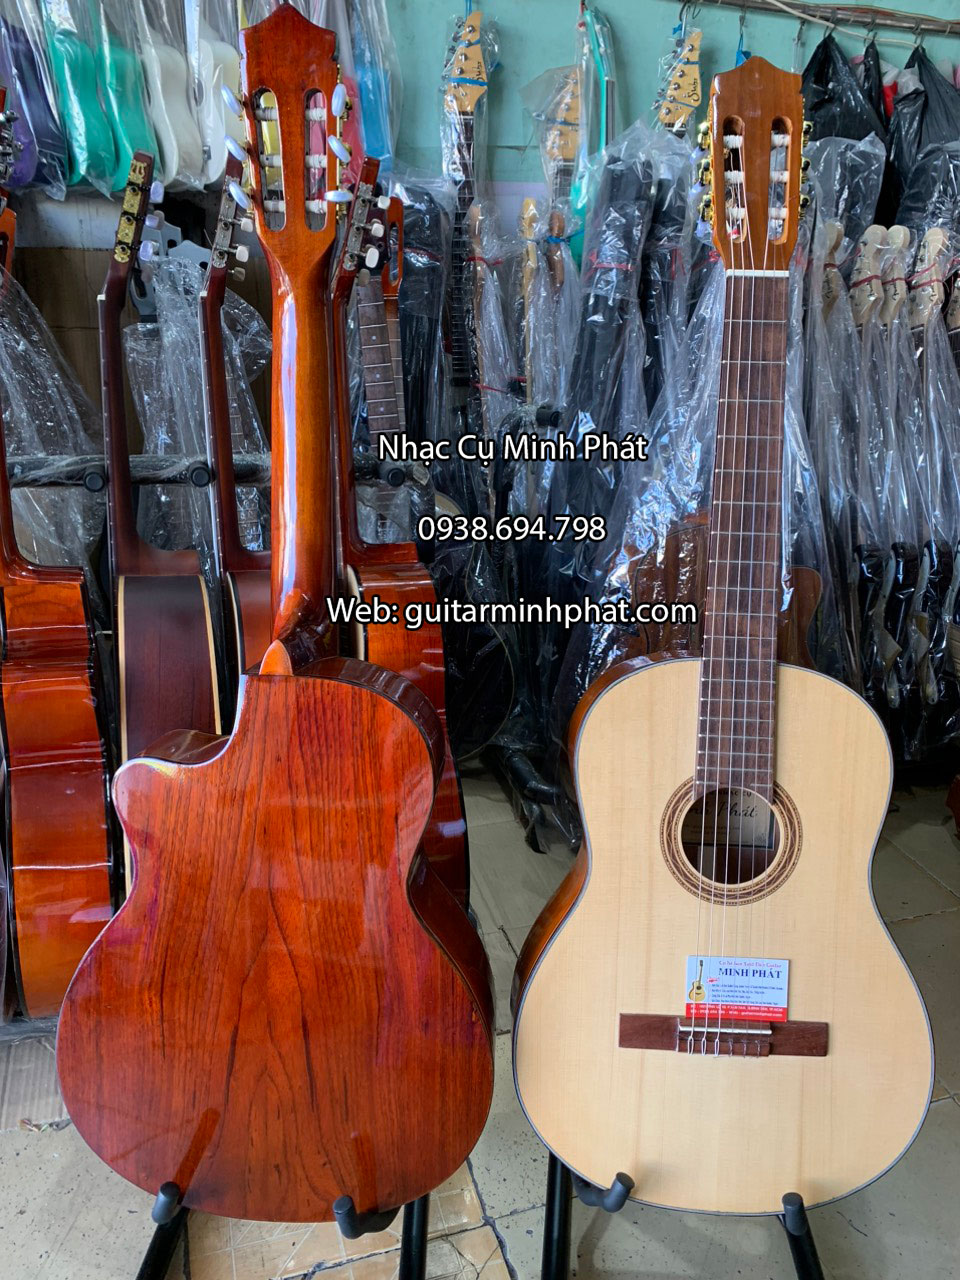 Bán đàn guitar classic giá rẻ uy tín chất lượng tại quận Bình Tân